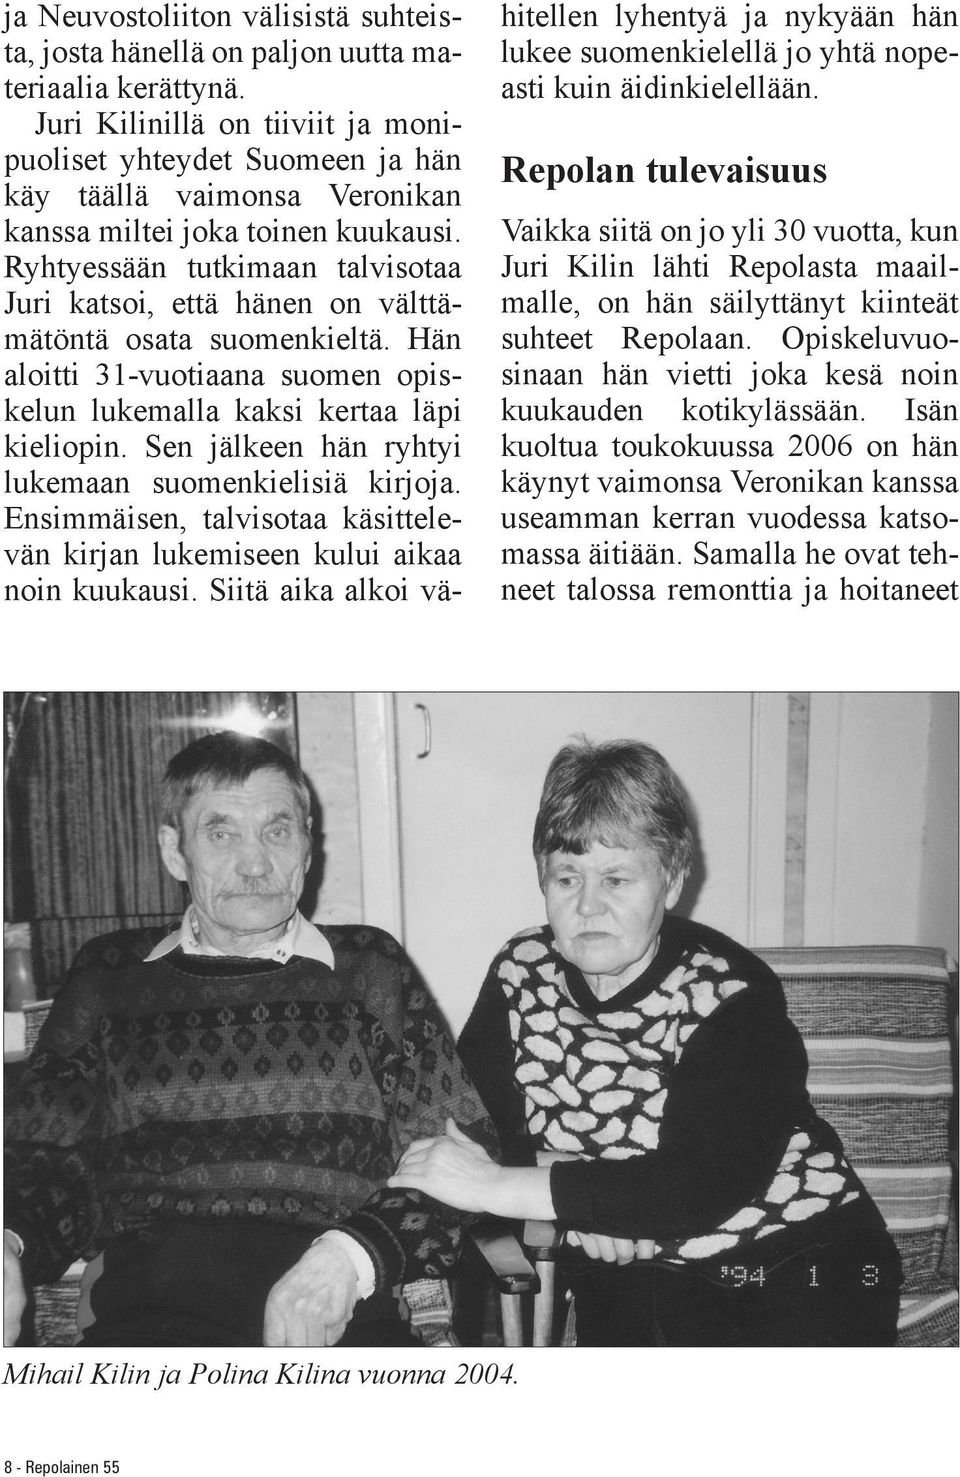 Ryhtyessään tutkimaan talvisotaa Juri katsoi, että hänen on välttämätöntä osata suomenkieltä. Hän aloitti 31-vuotiaana suomen opiskelun lukemalla kaksi kertaa läpi kieliopin.